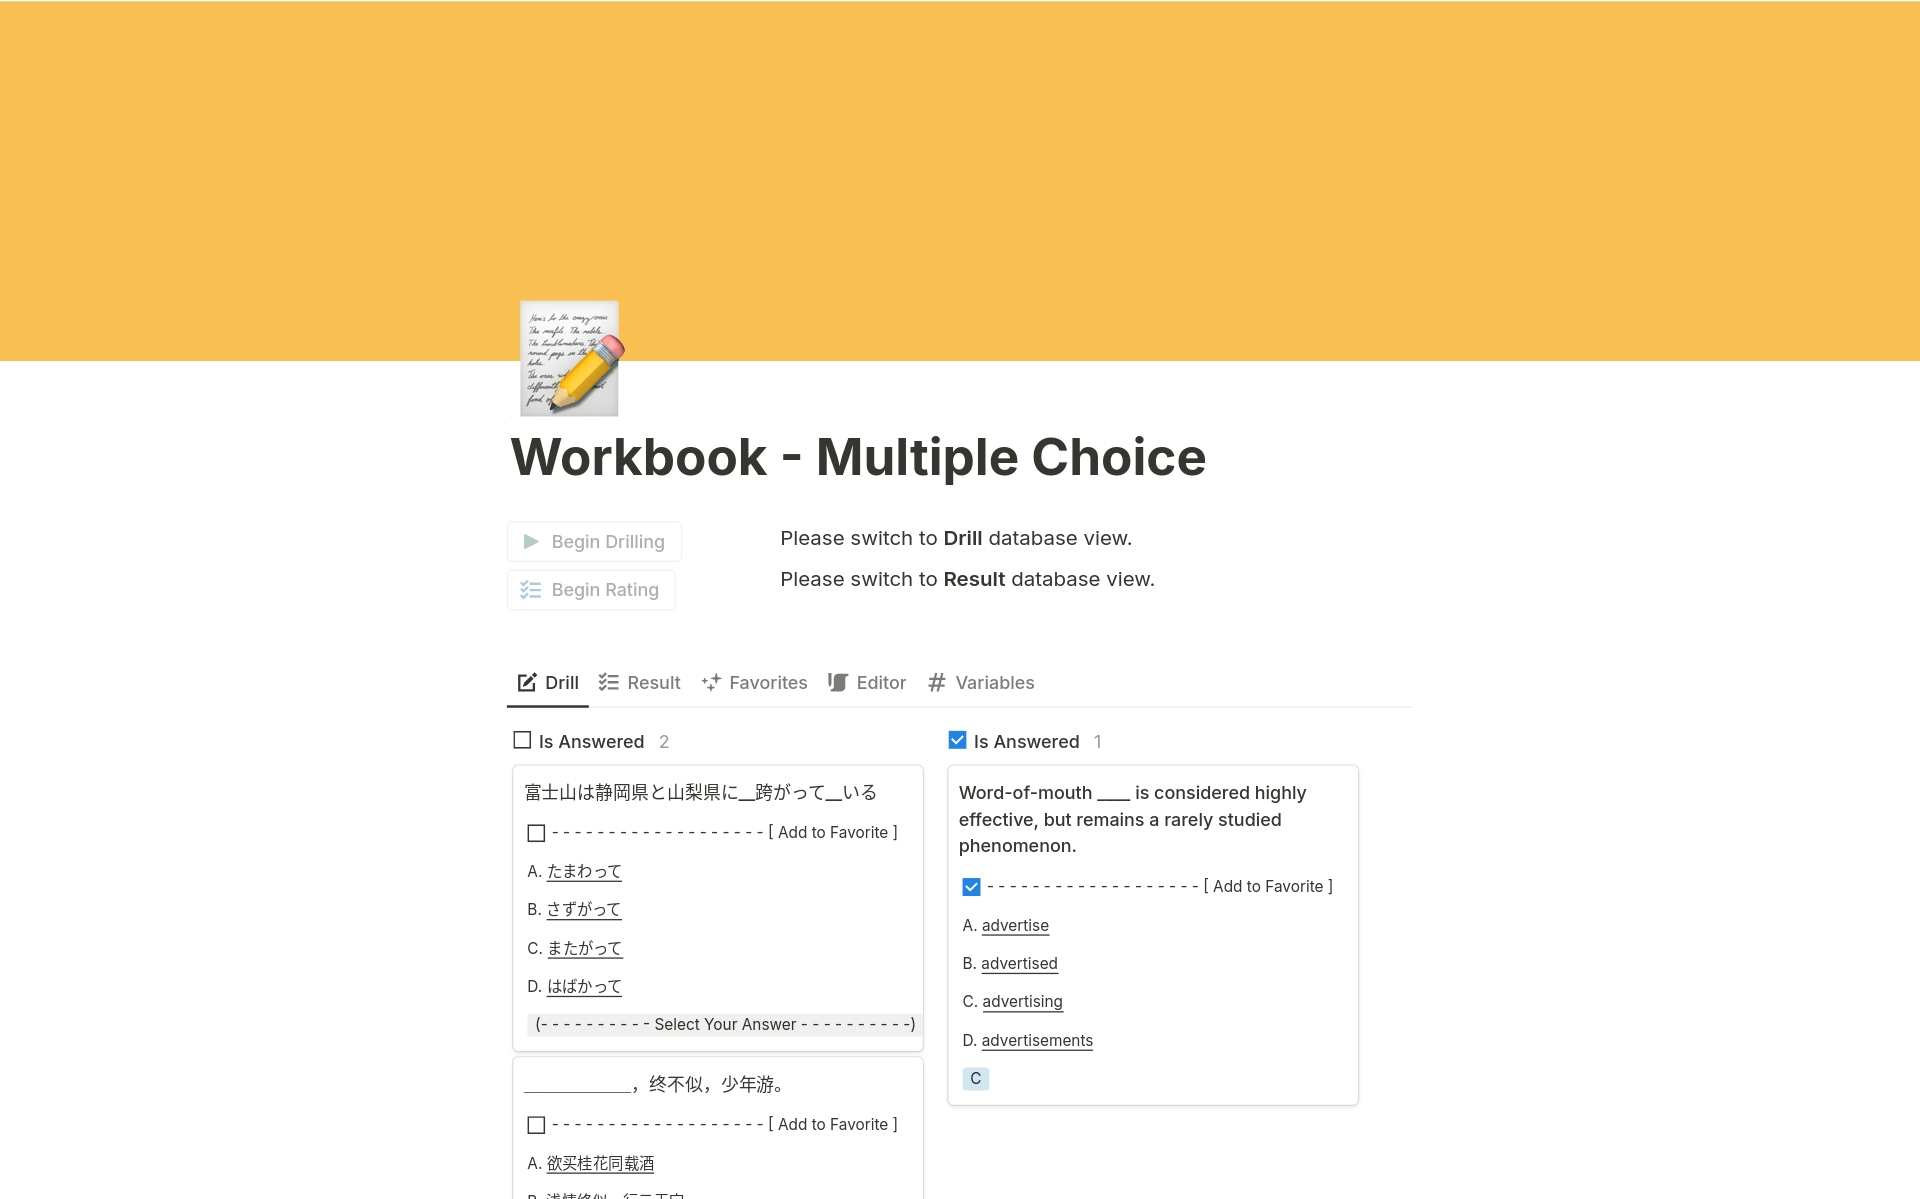 Uma prévia do modelo para Workbook - Multiple Choice